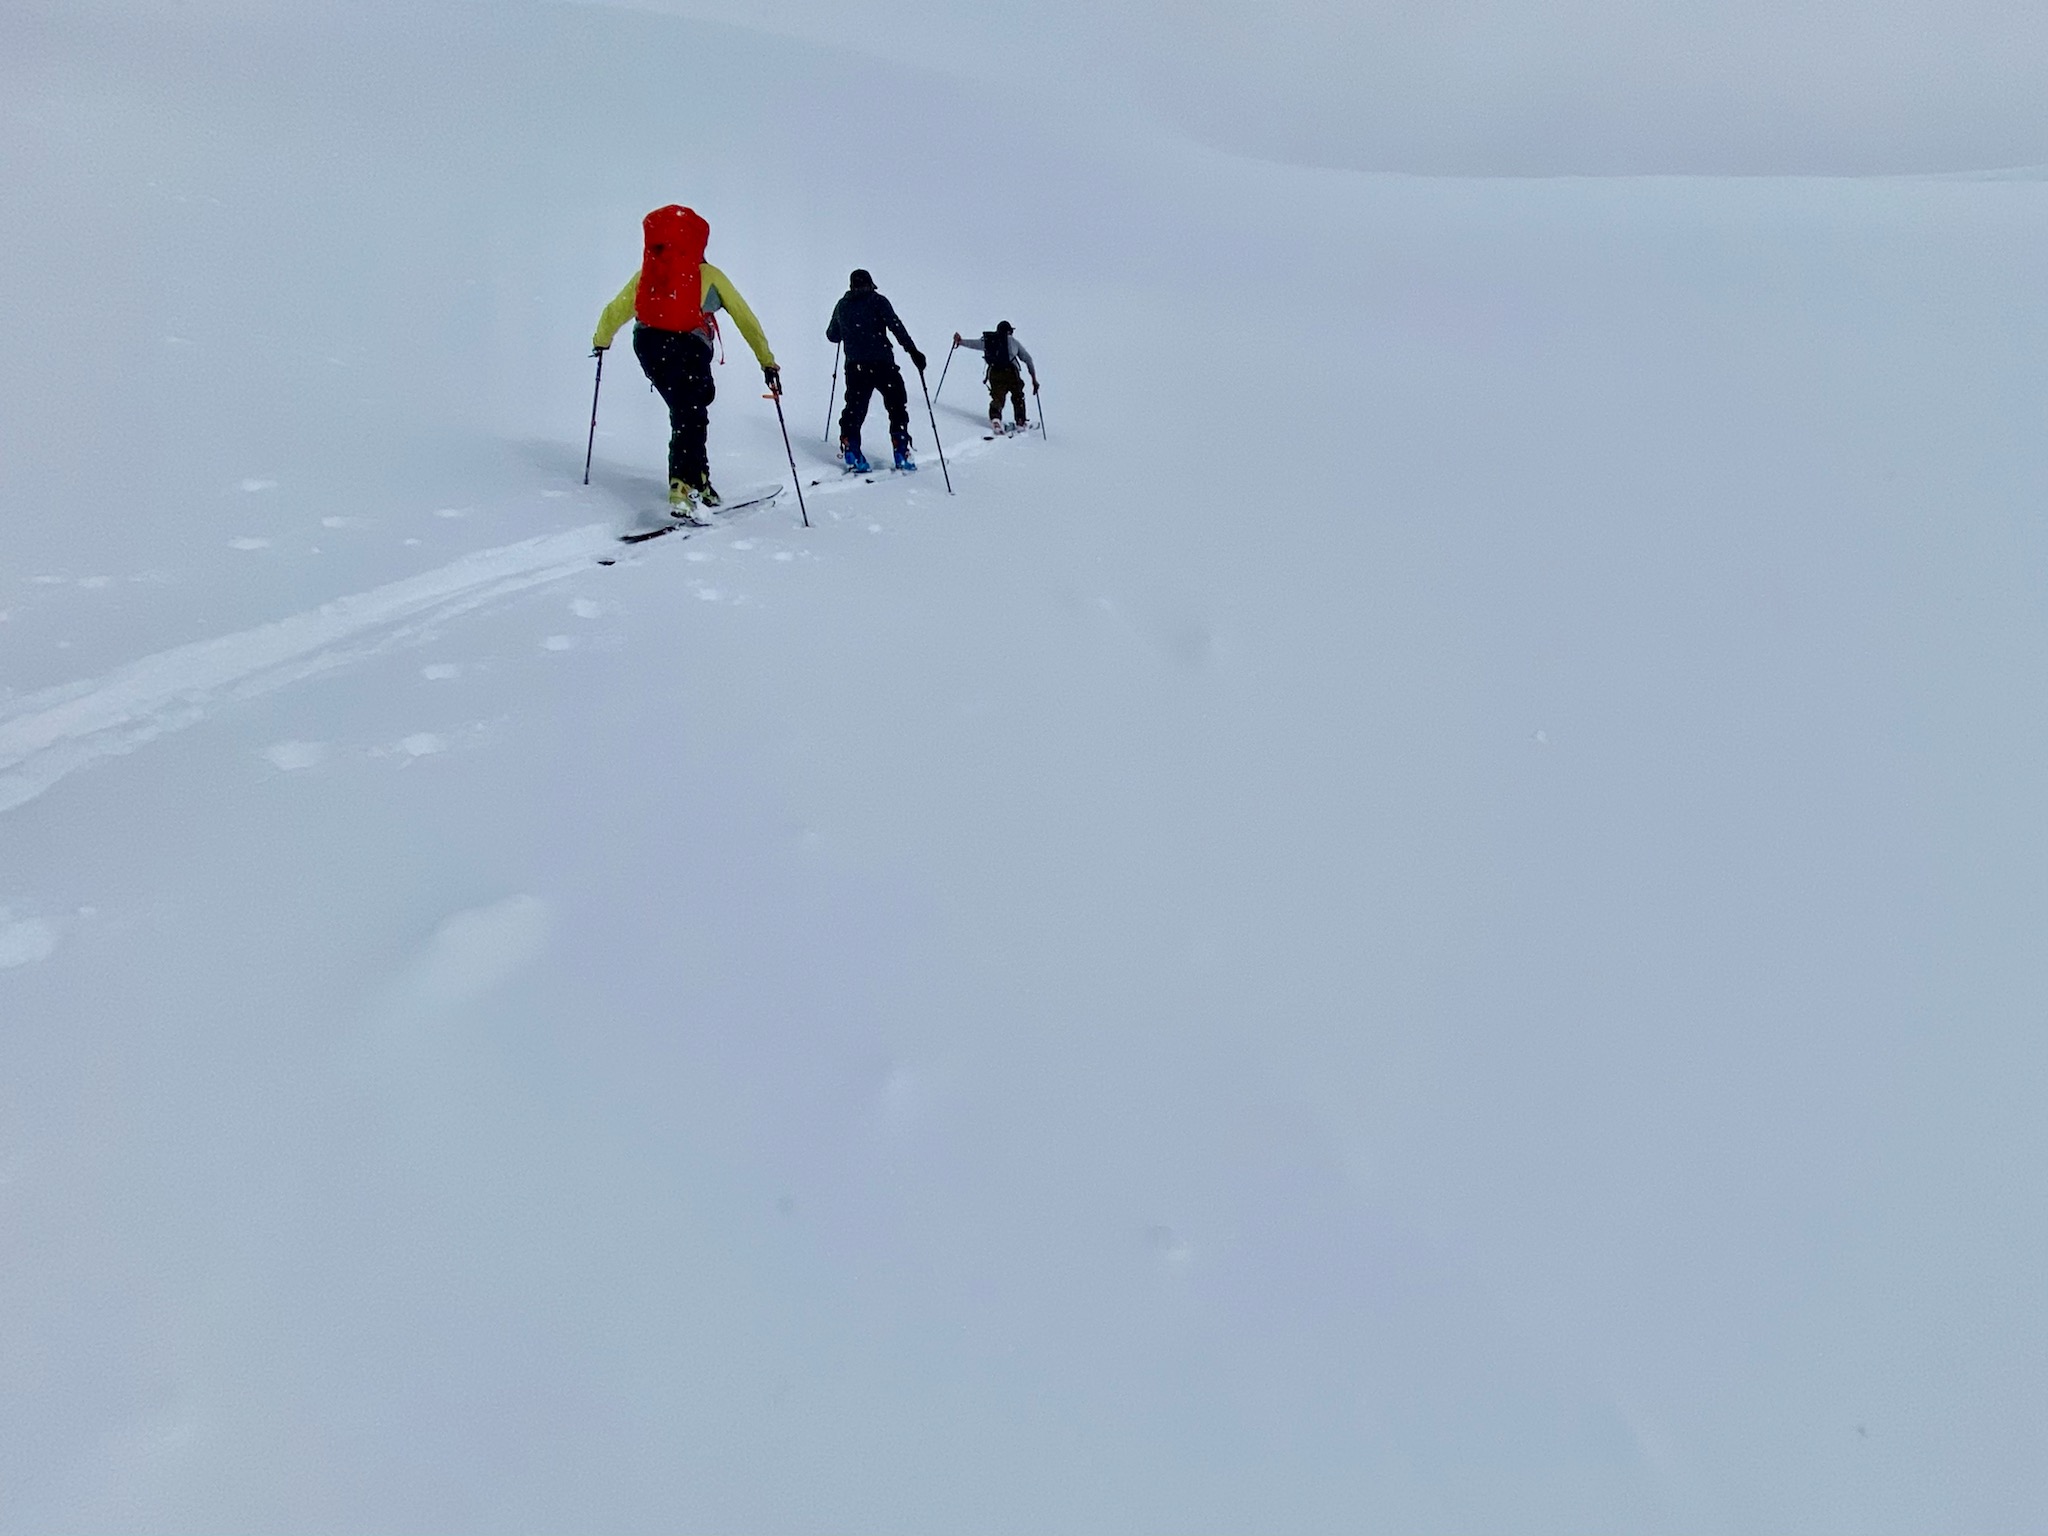 Three skiers skin uphill